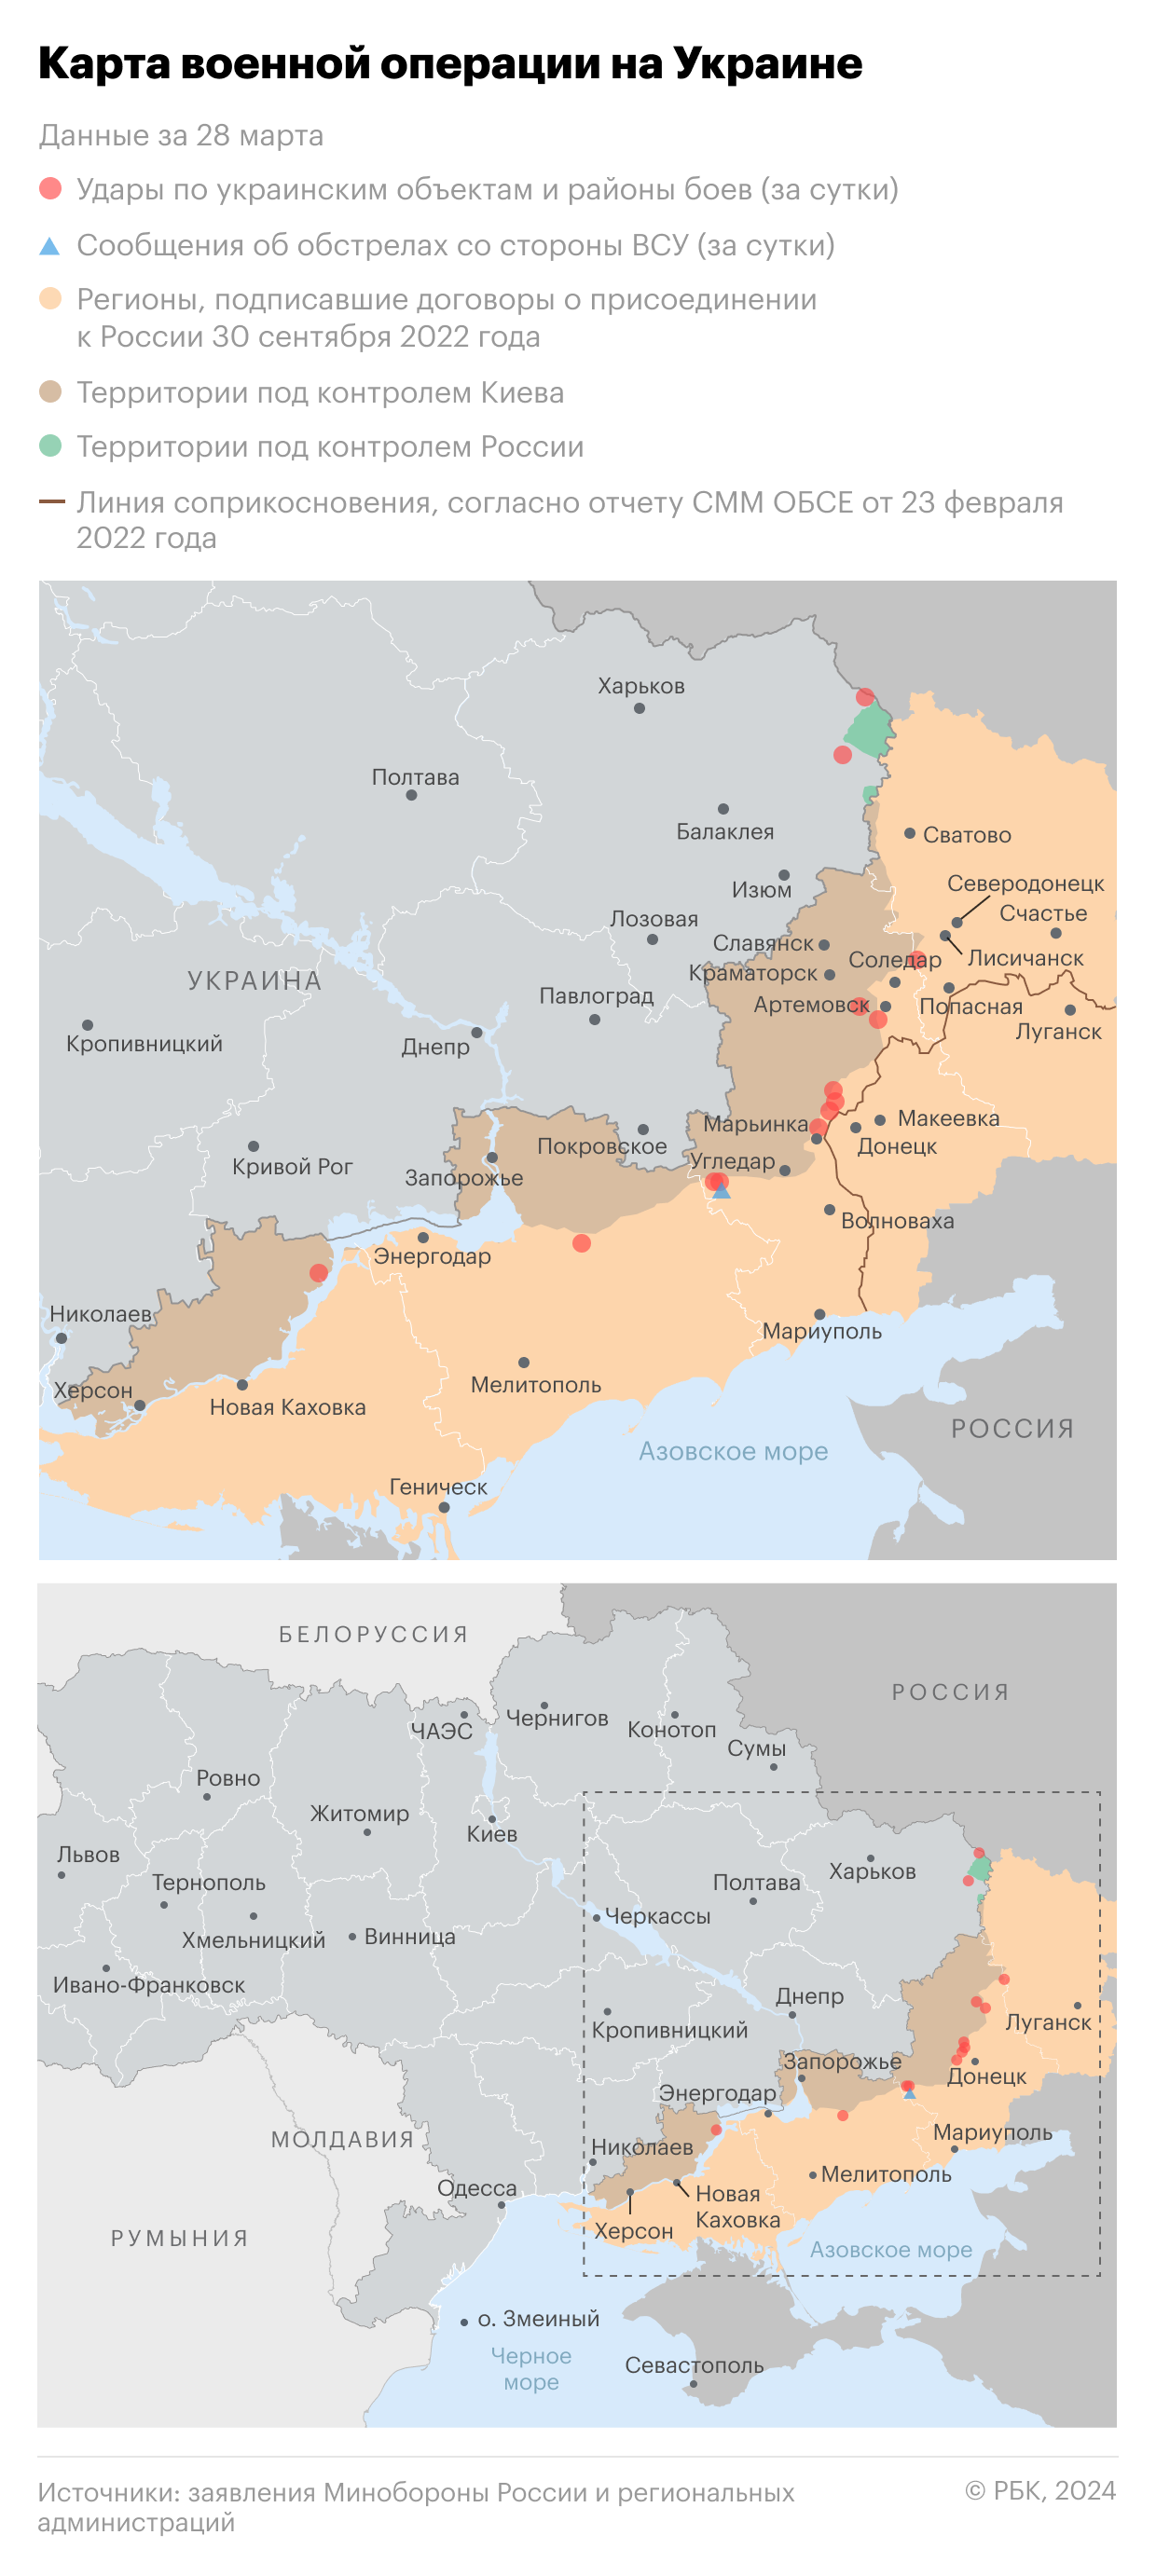 Киев выразил уверенность в операции по возвращению Крыма